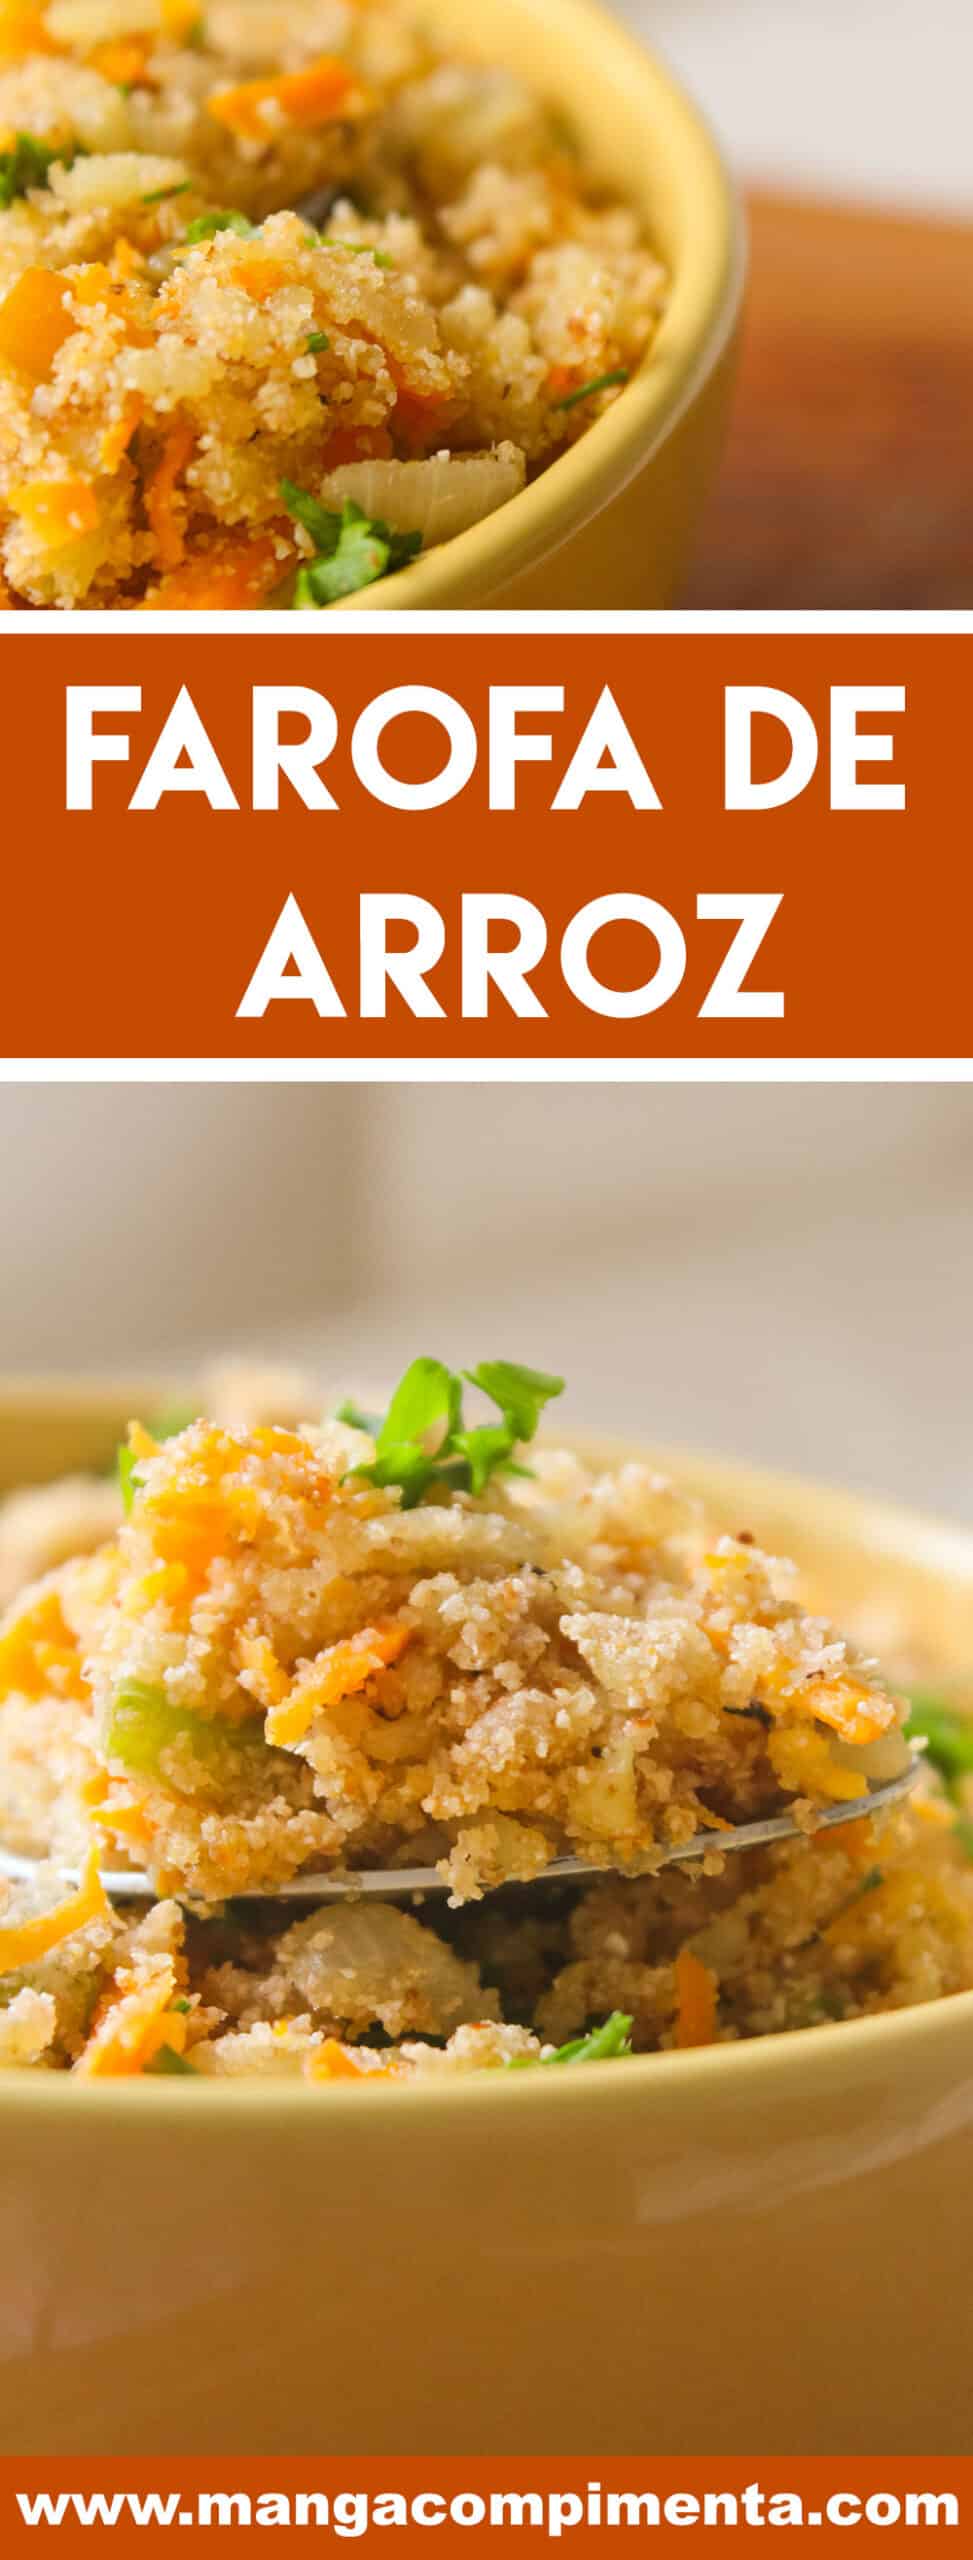 Receita de Farofa de Arroz - aproveite o feriadão de carnaval para preparar um delicioso churrasco e servir essa farofa deliciosa.